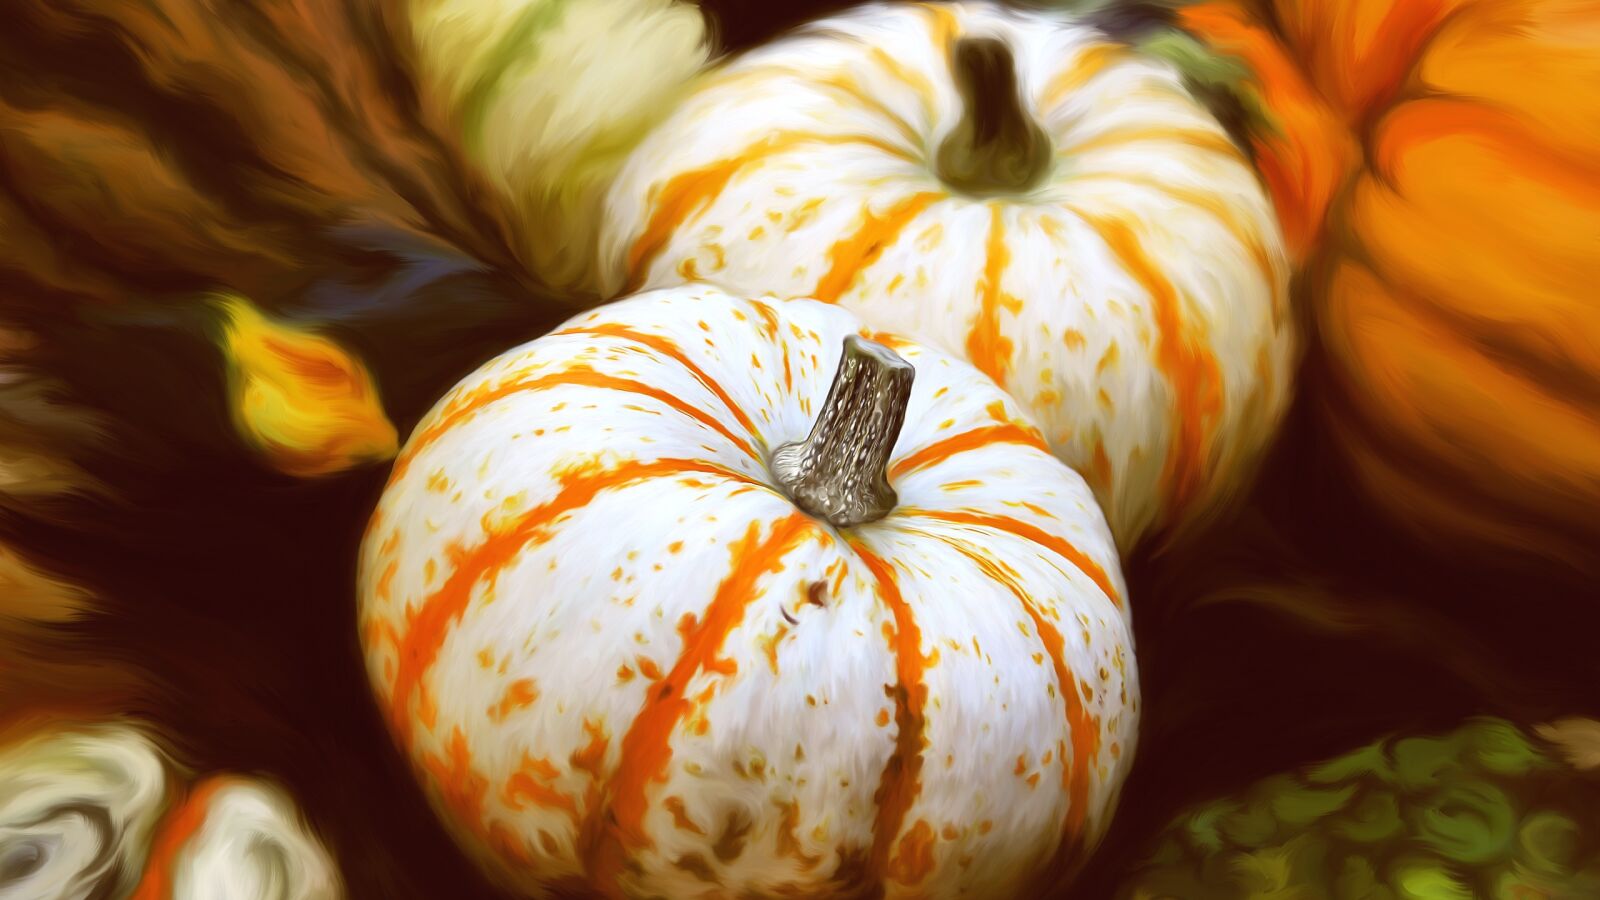 Canon EOS 550D (EOS Rebel T2i / EOS Kiss X4) sample photo. Gourd, pumpkins, pumpkin photography